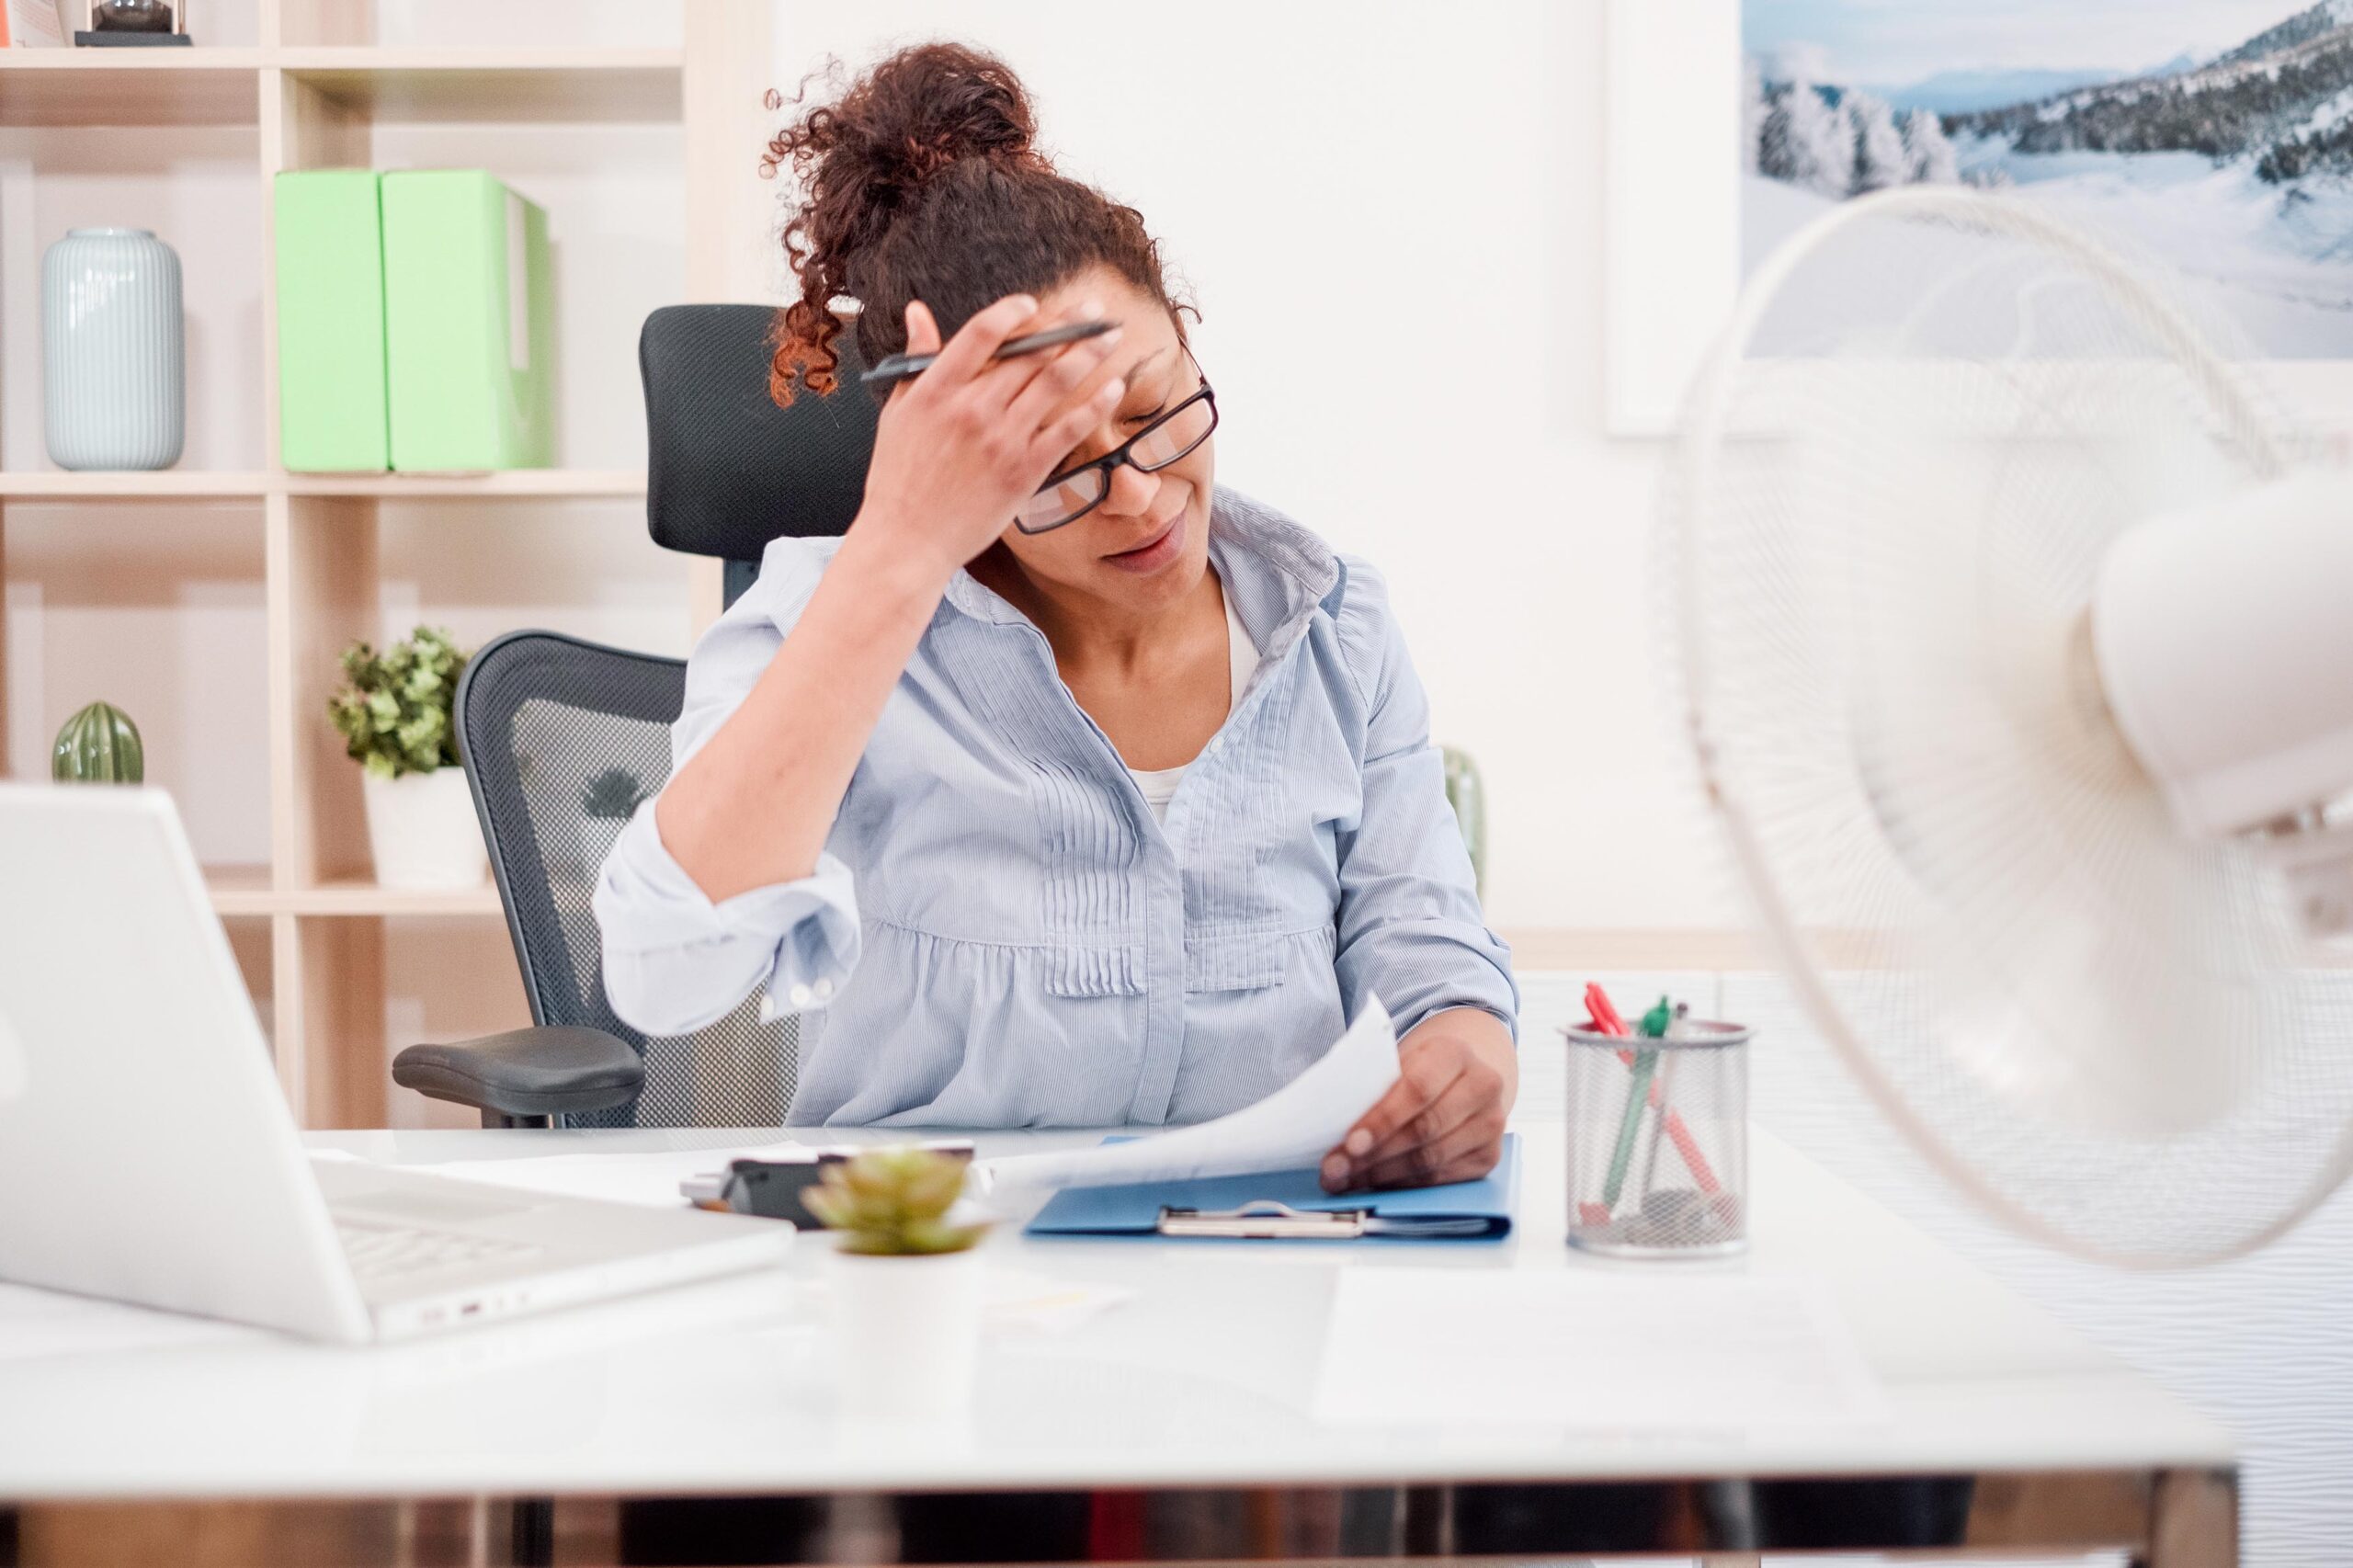 La chaleur nuit-elle à la productivité au bureau ?